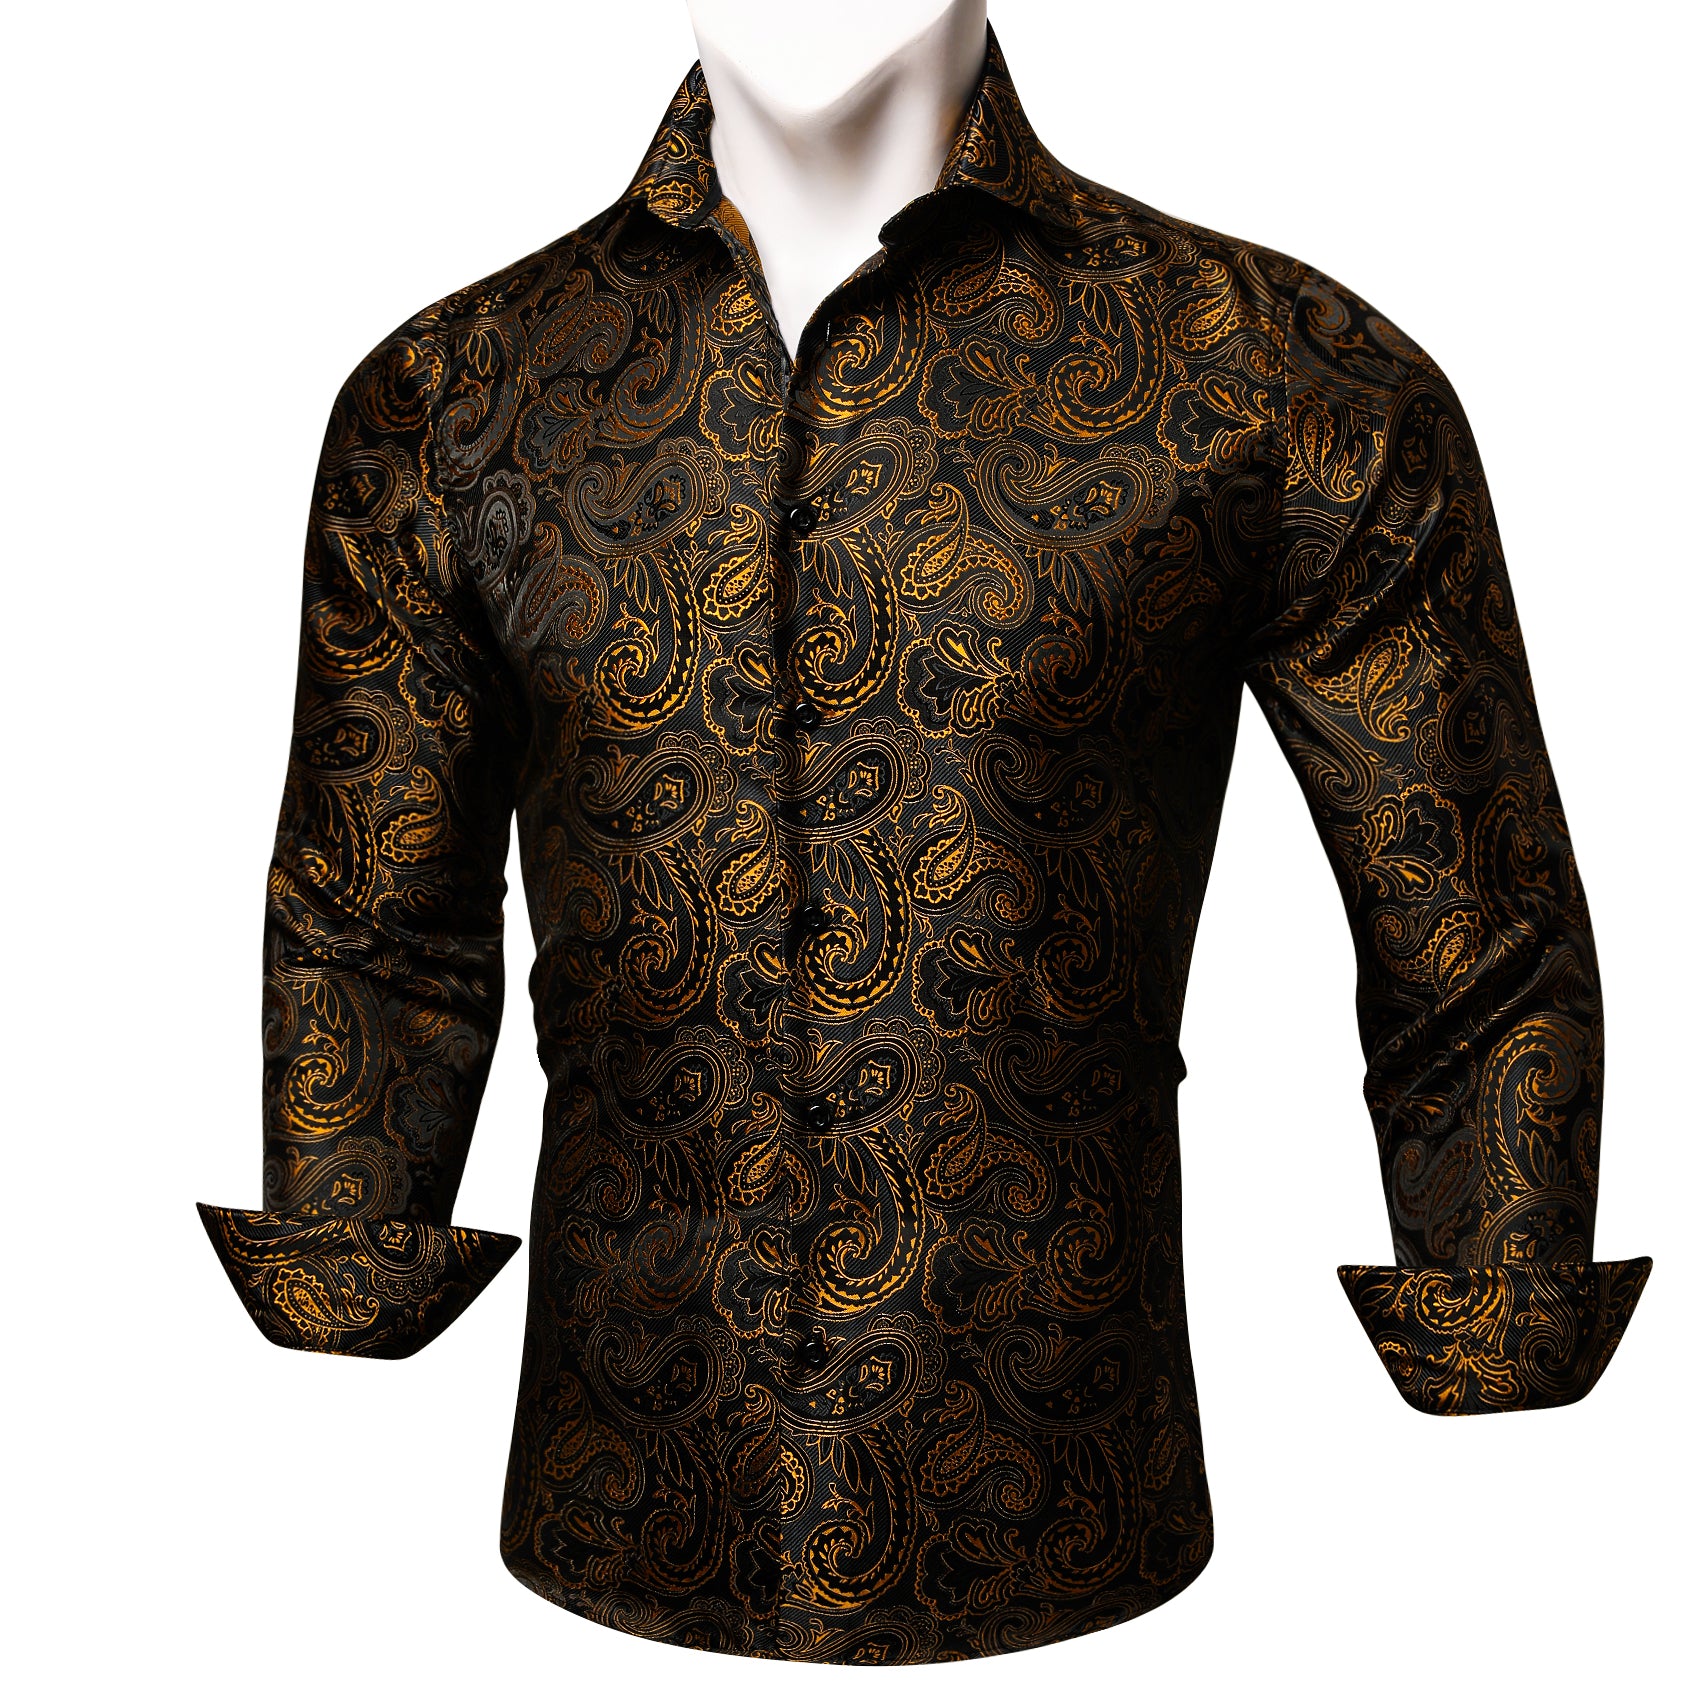 Barry Wang Long Sleeve Shirt Black Golden Paisley Silk Shirt